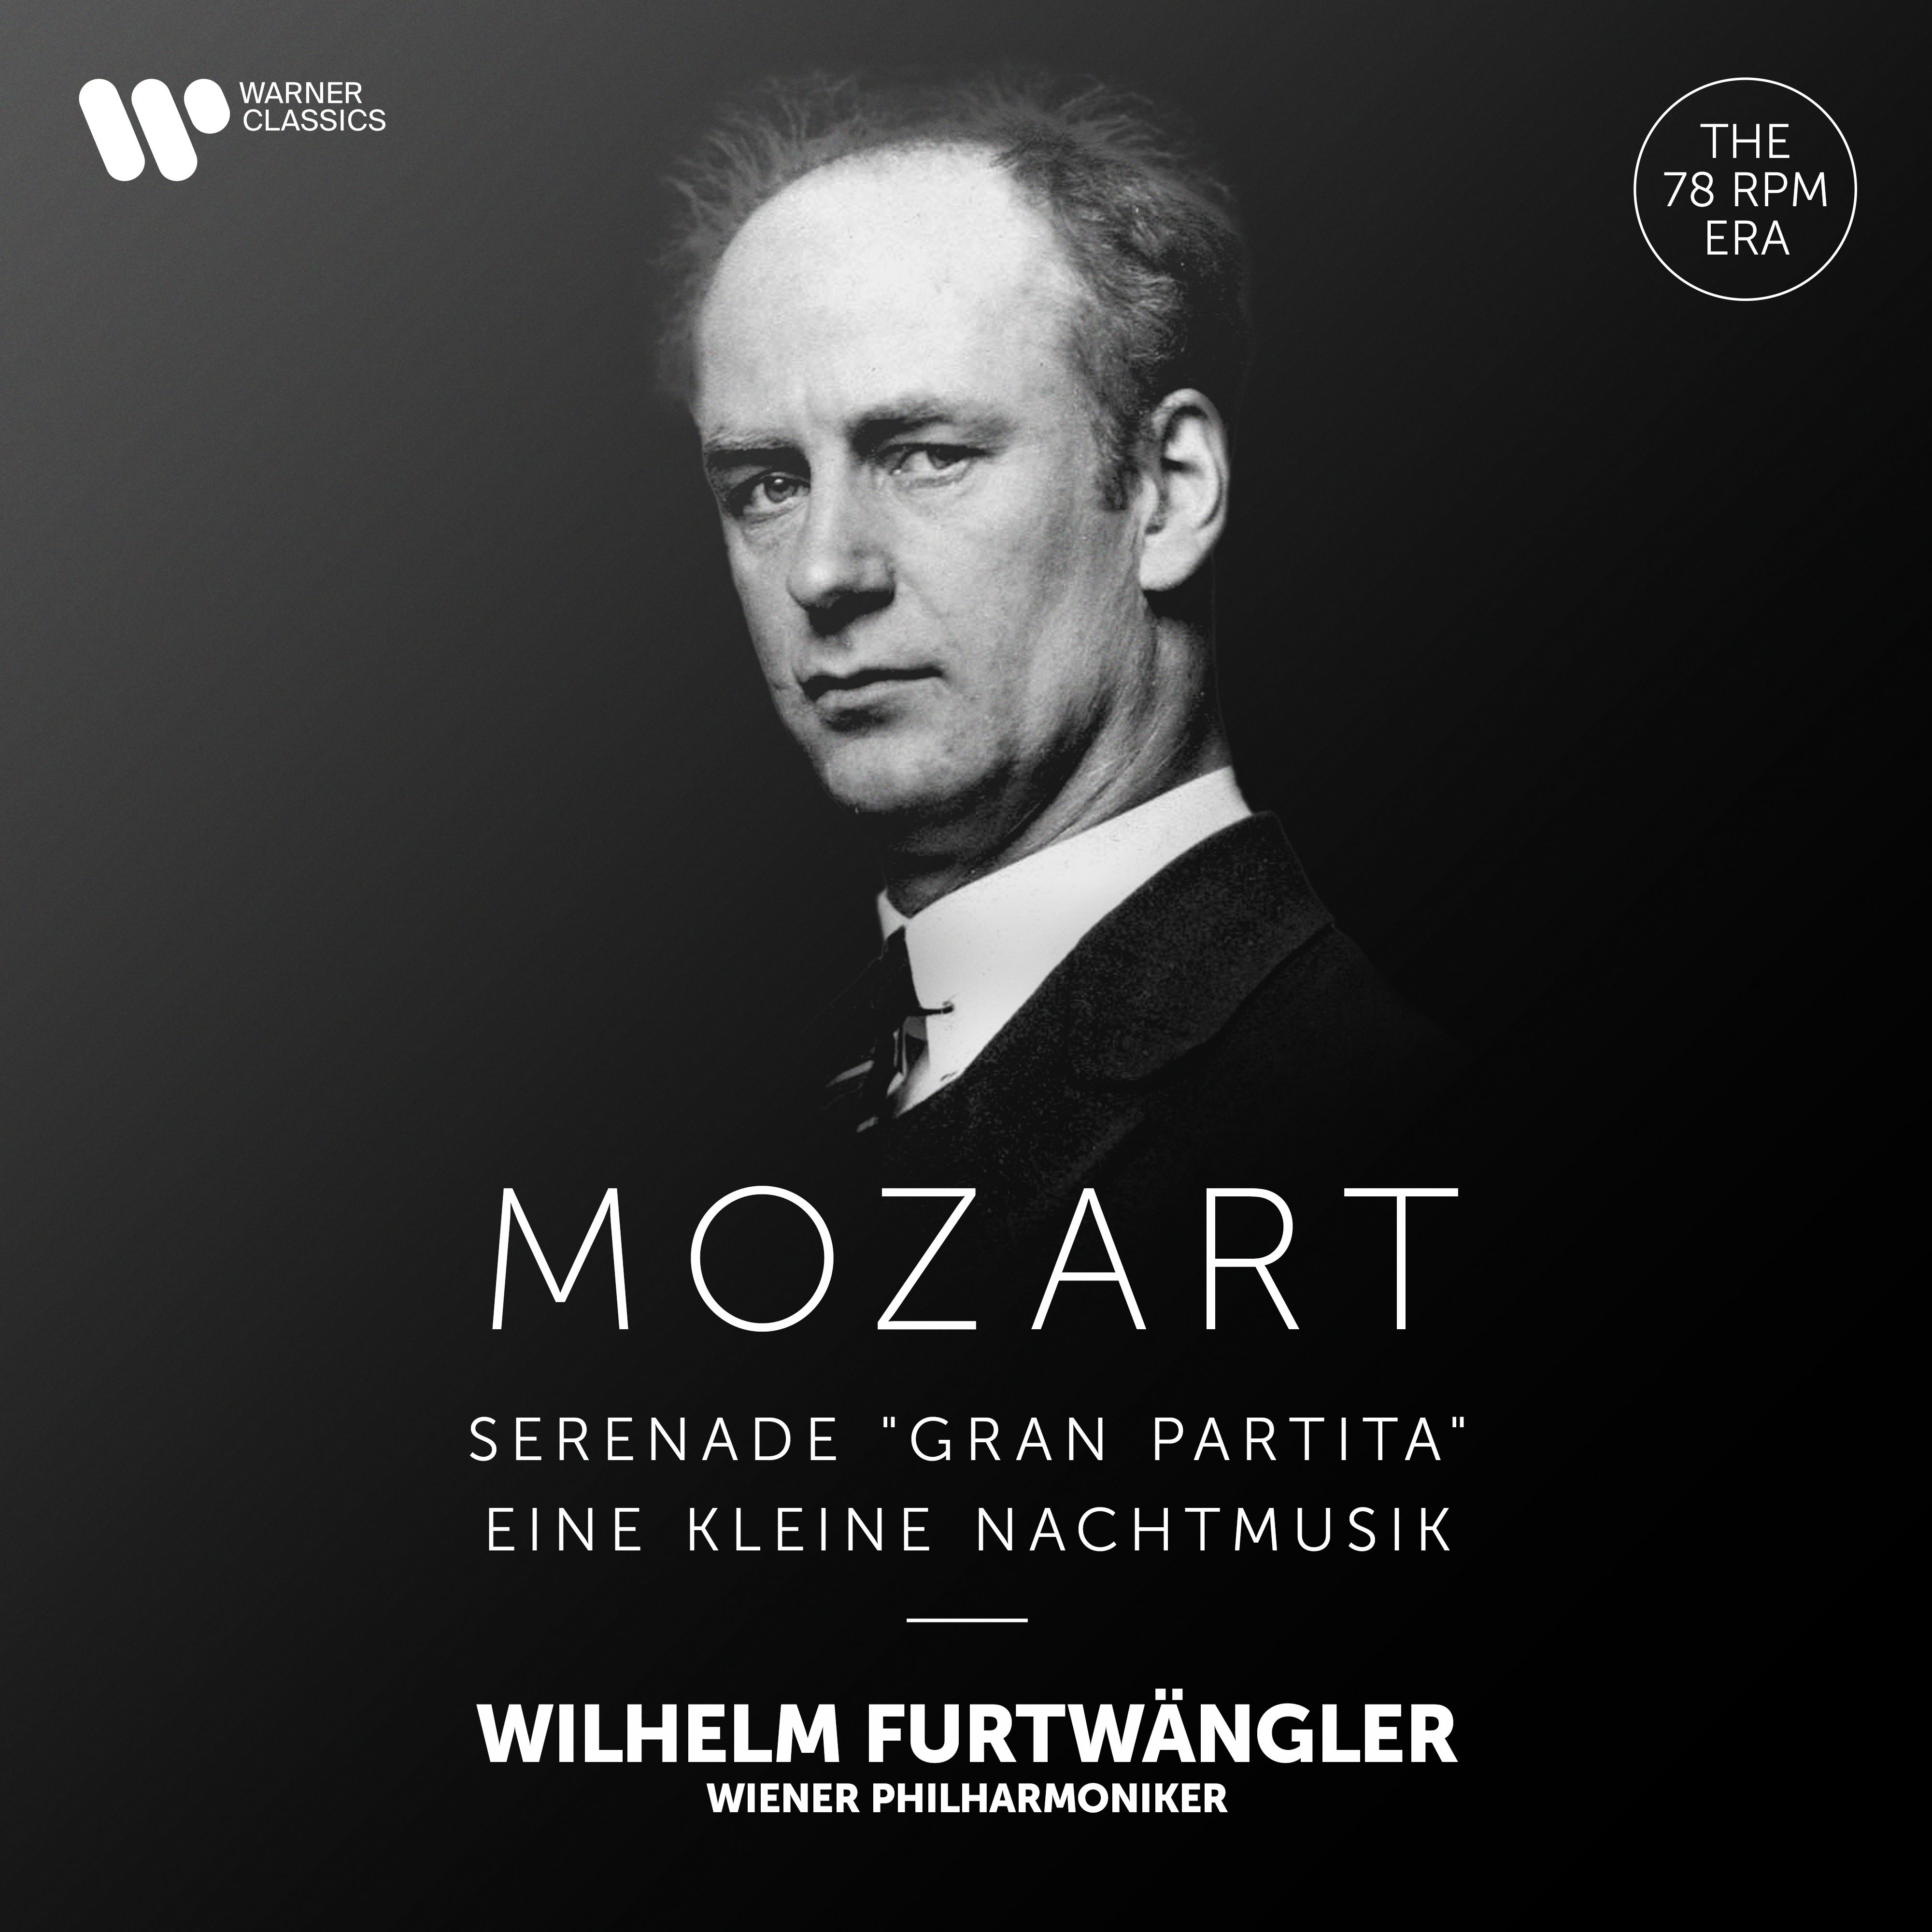 Wiener Philharmoniker, Wilhelm Furtwangler - Mozart: Serenade, K. 361 “Gran partita” & Eine kleine Nachtmusik, K. 525 (2021) [FLAC 24bit/192kHz]